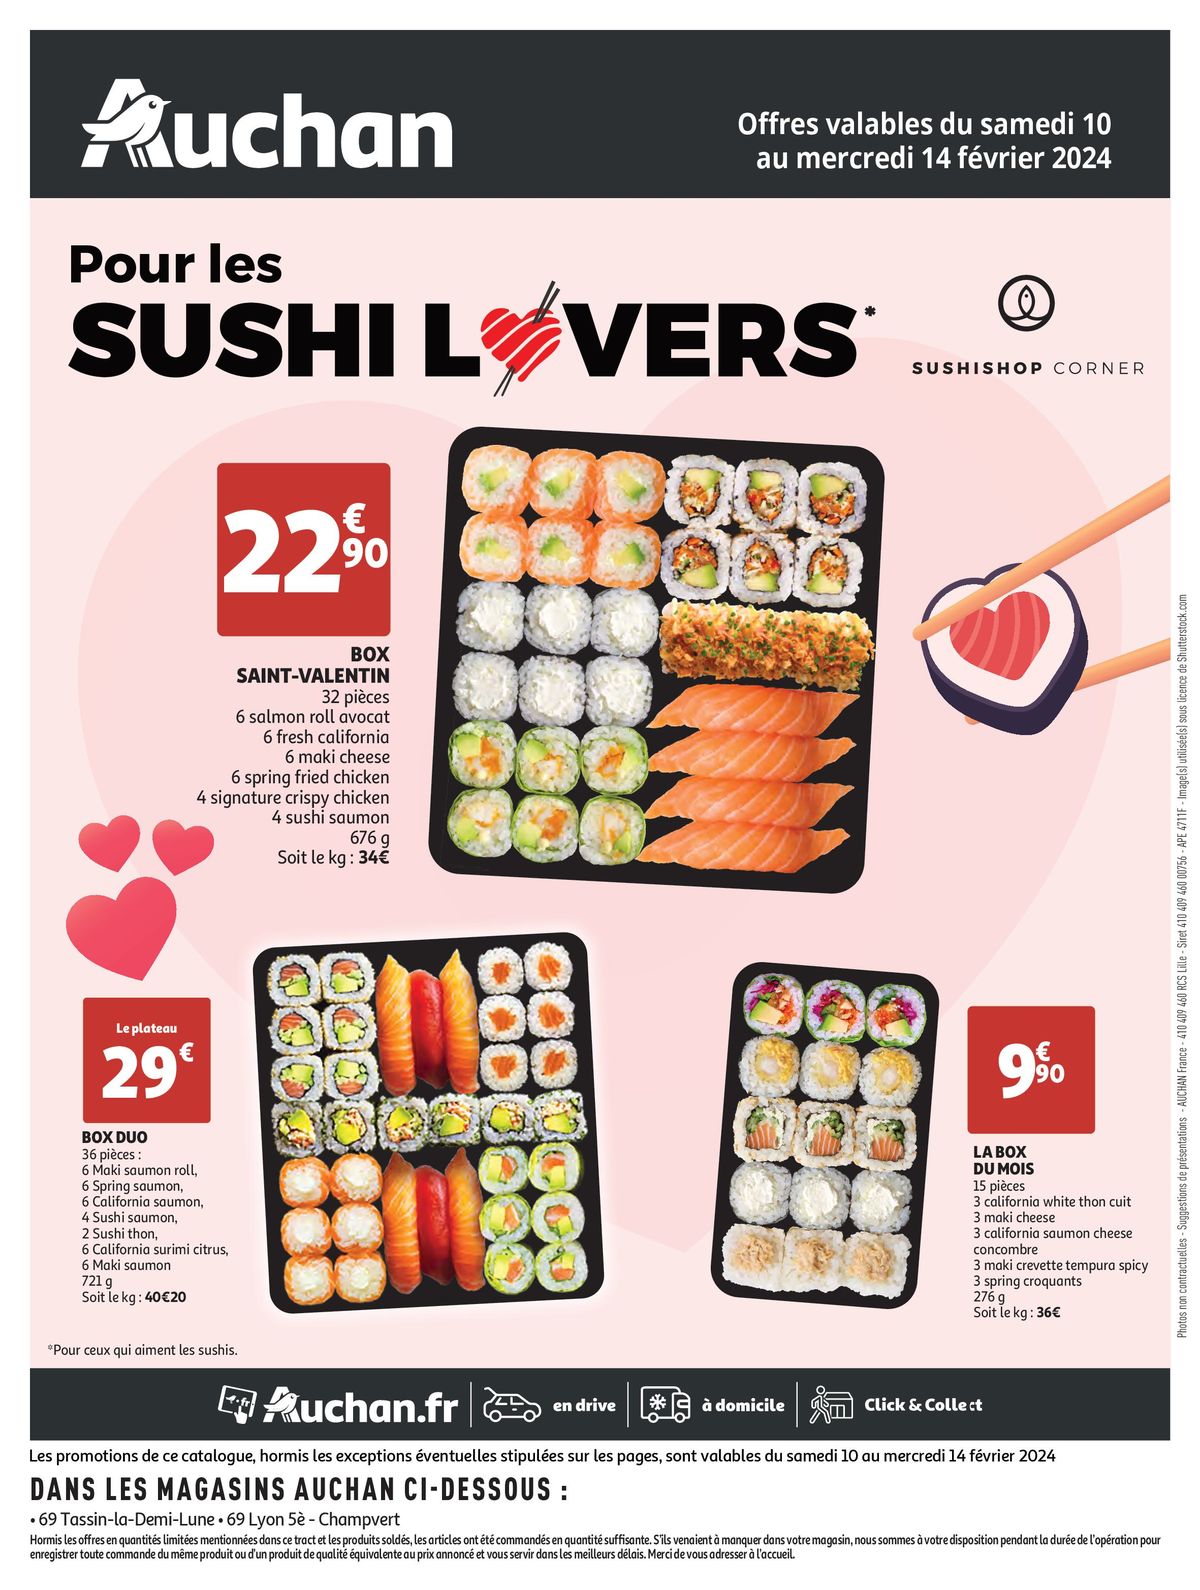 Catalogue Sushishop Corner pour les sushi lovers, page 00001